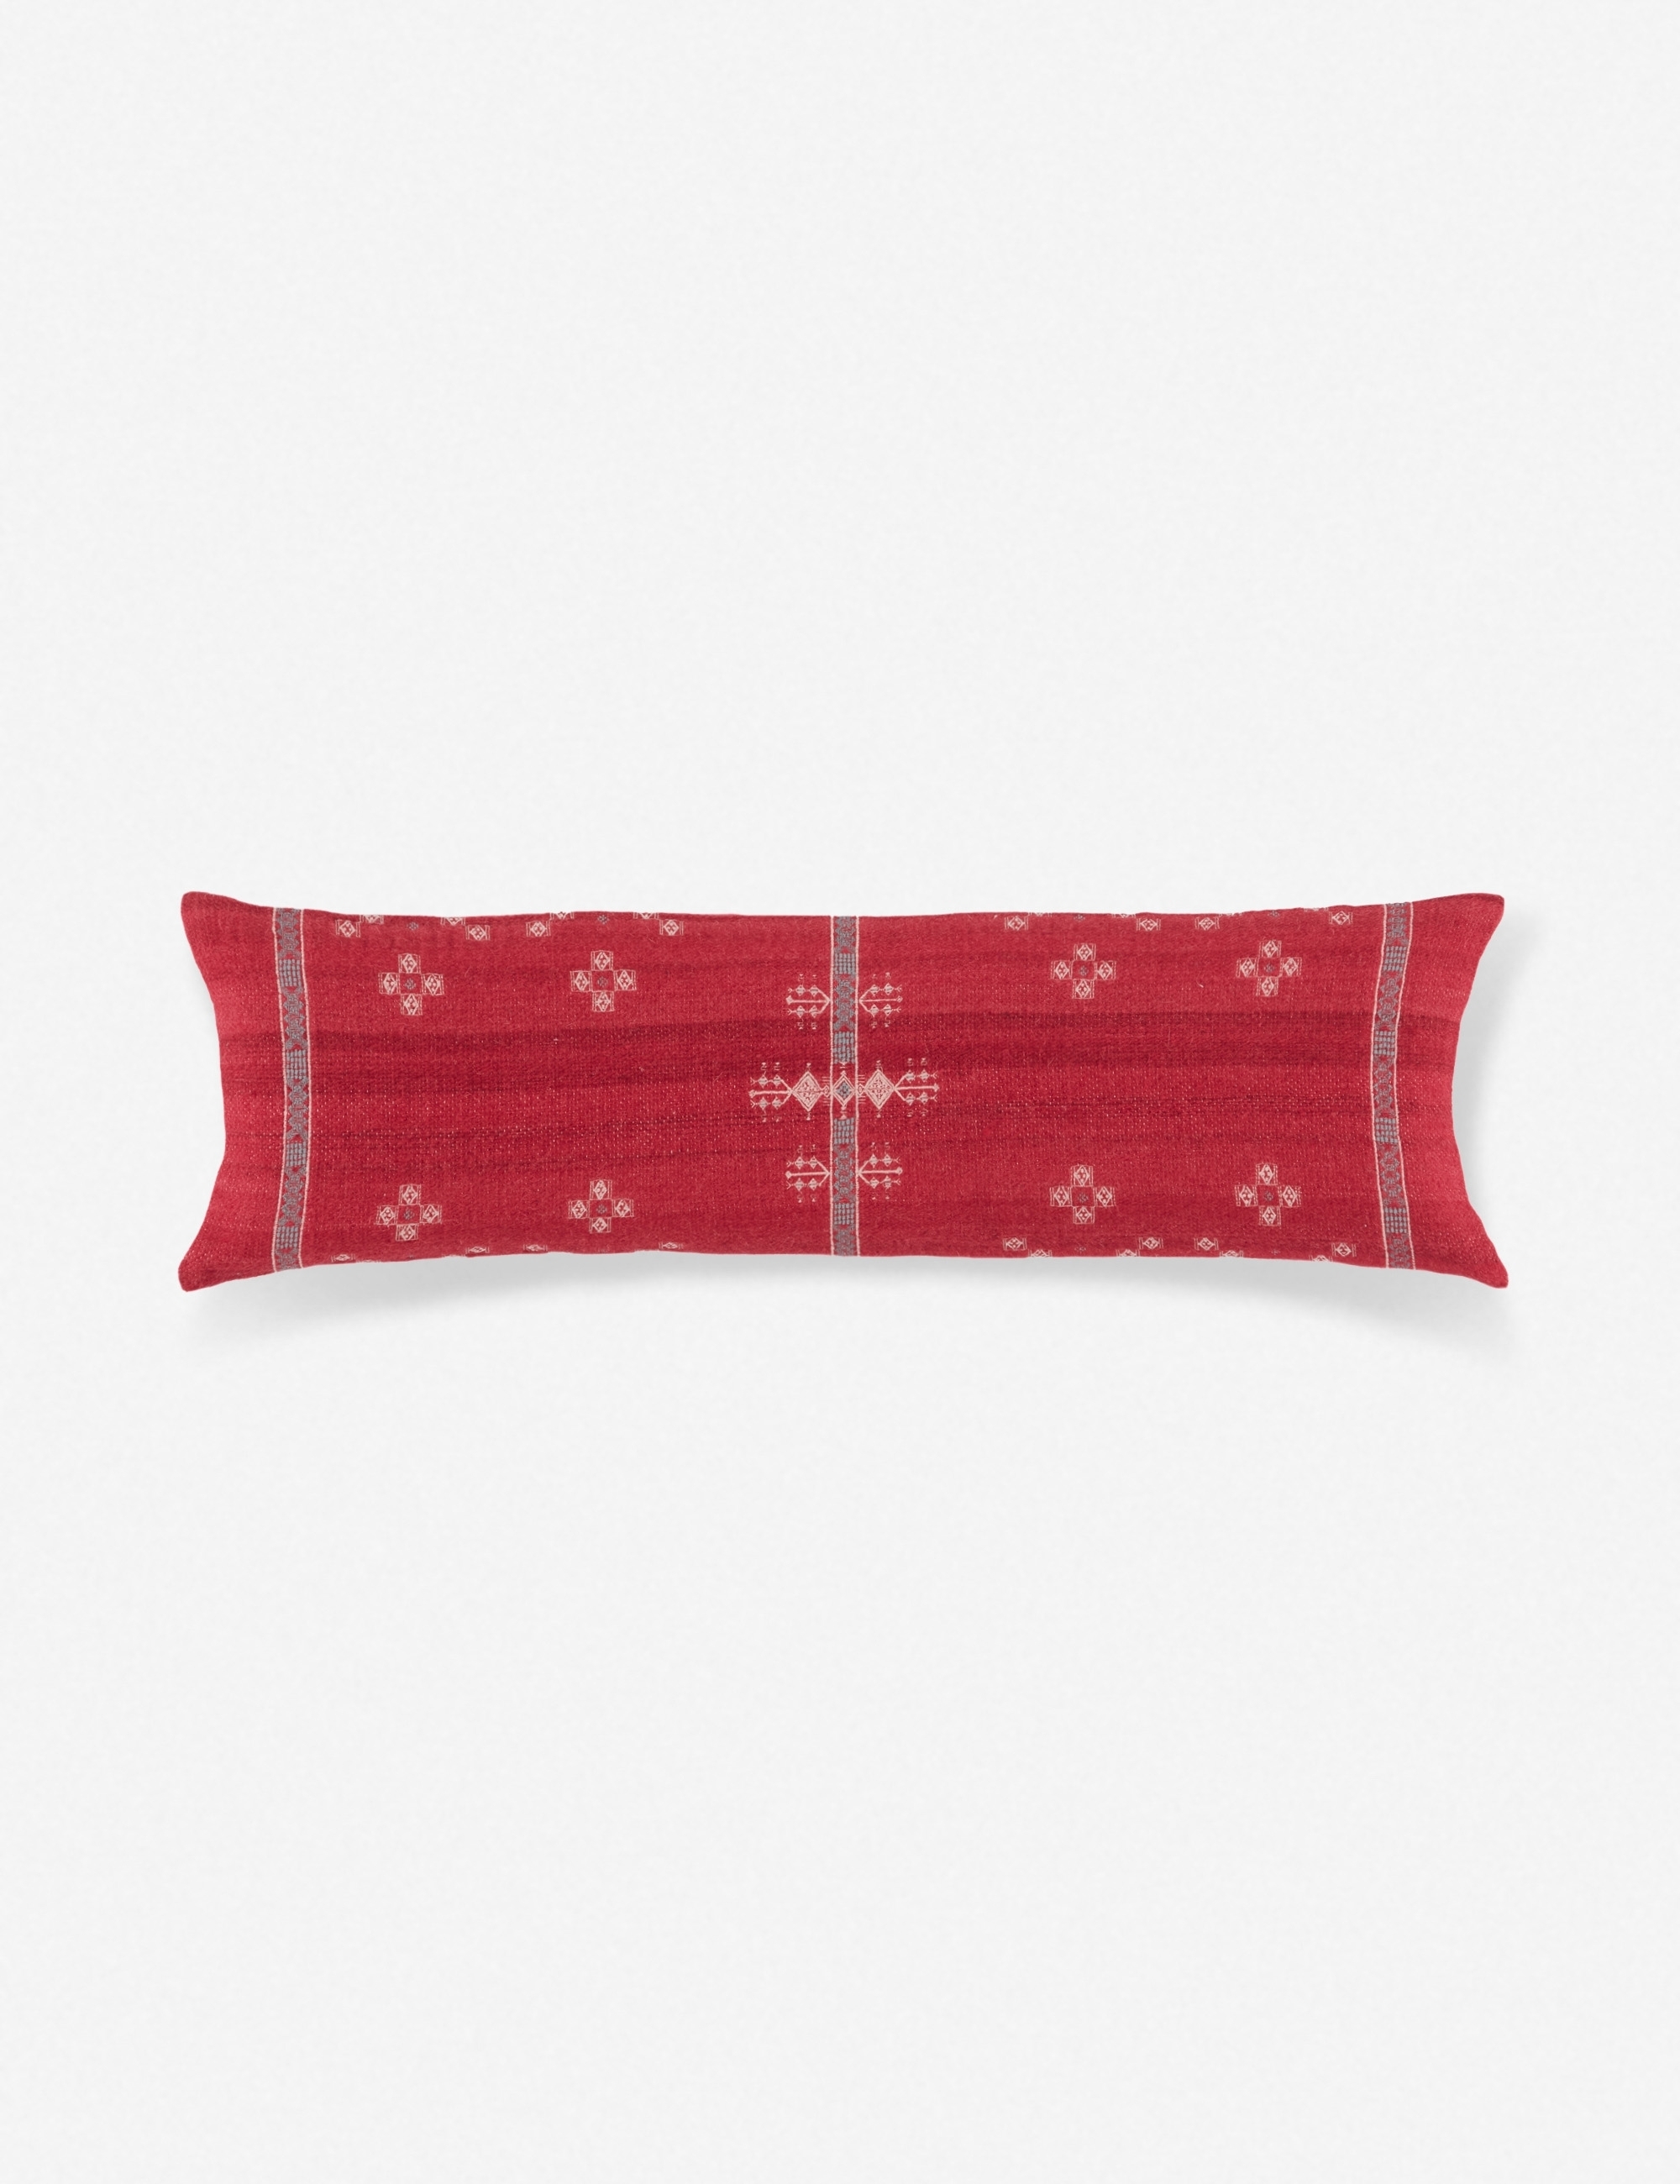 Scarlet Long Lumbar Pillow - Image 0